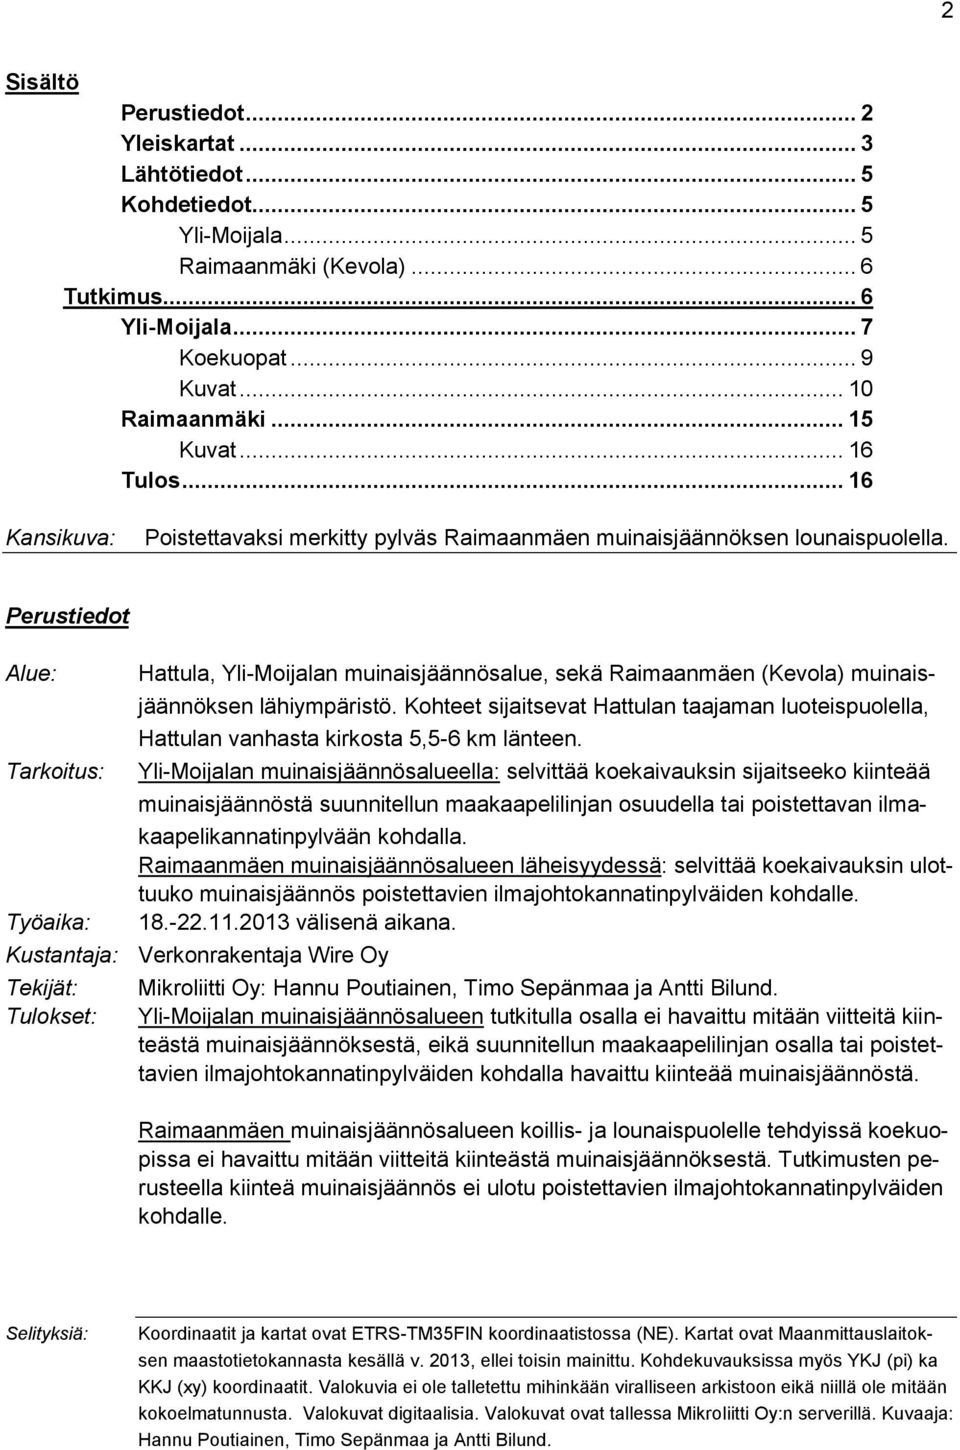 Perustiedot Alue: Tarkoitus: Työaika: Hattula, Yli-Moijalan muinaisjäännösalue, sekä Raimaanmäen (Kevola) muinaisjäännöksen lähiympäristö.